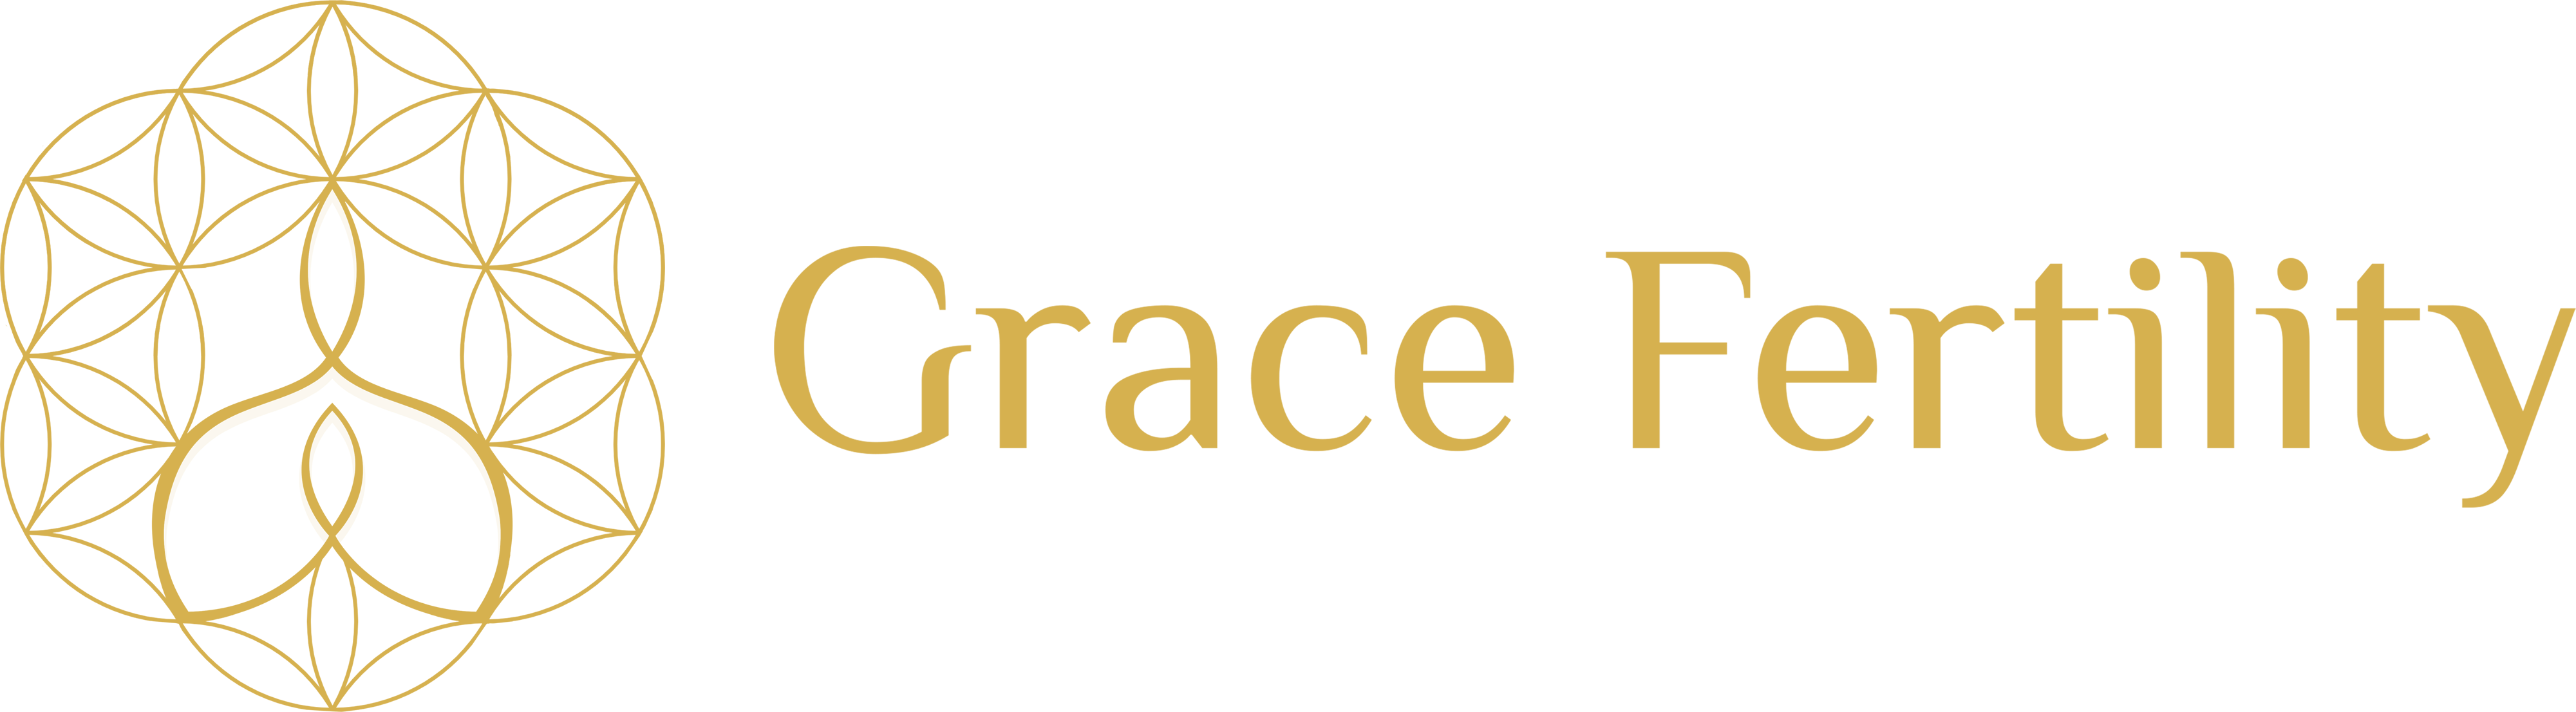 grace gold